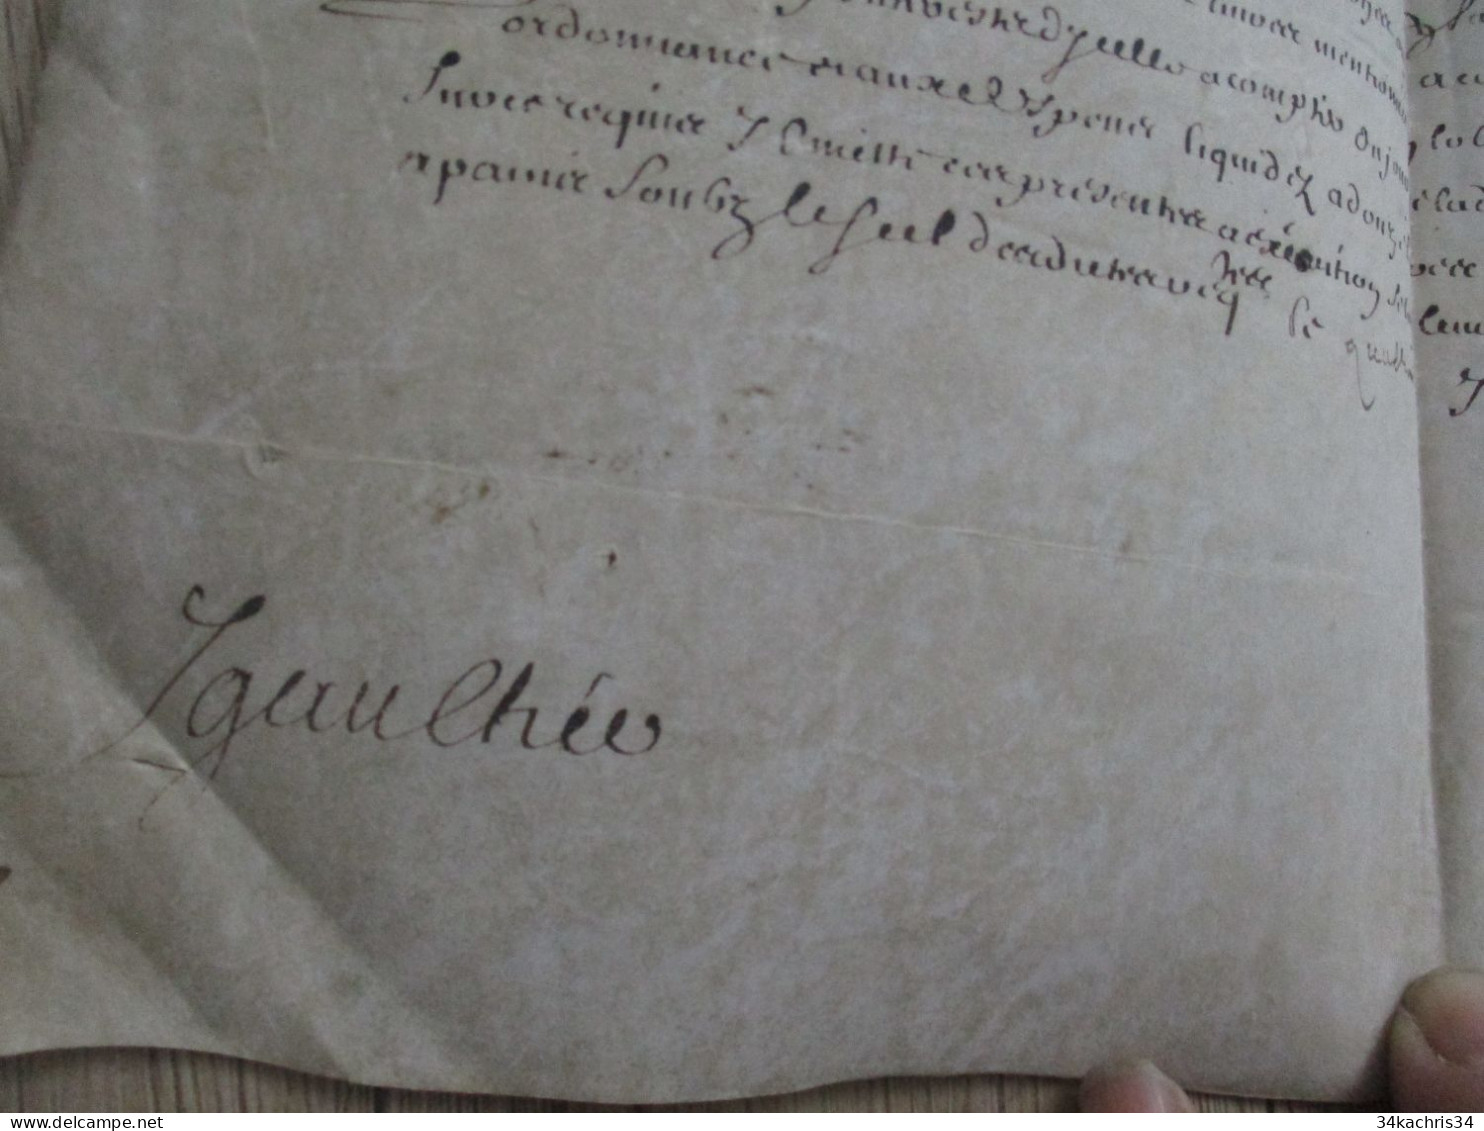 1665 pièce signée sur velin Mernost? Igaulhée condamnation à payer à déchiffrer